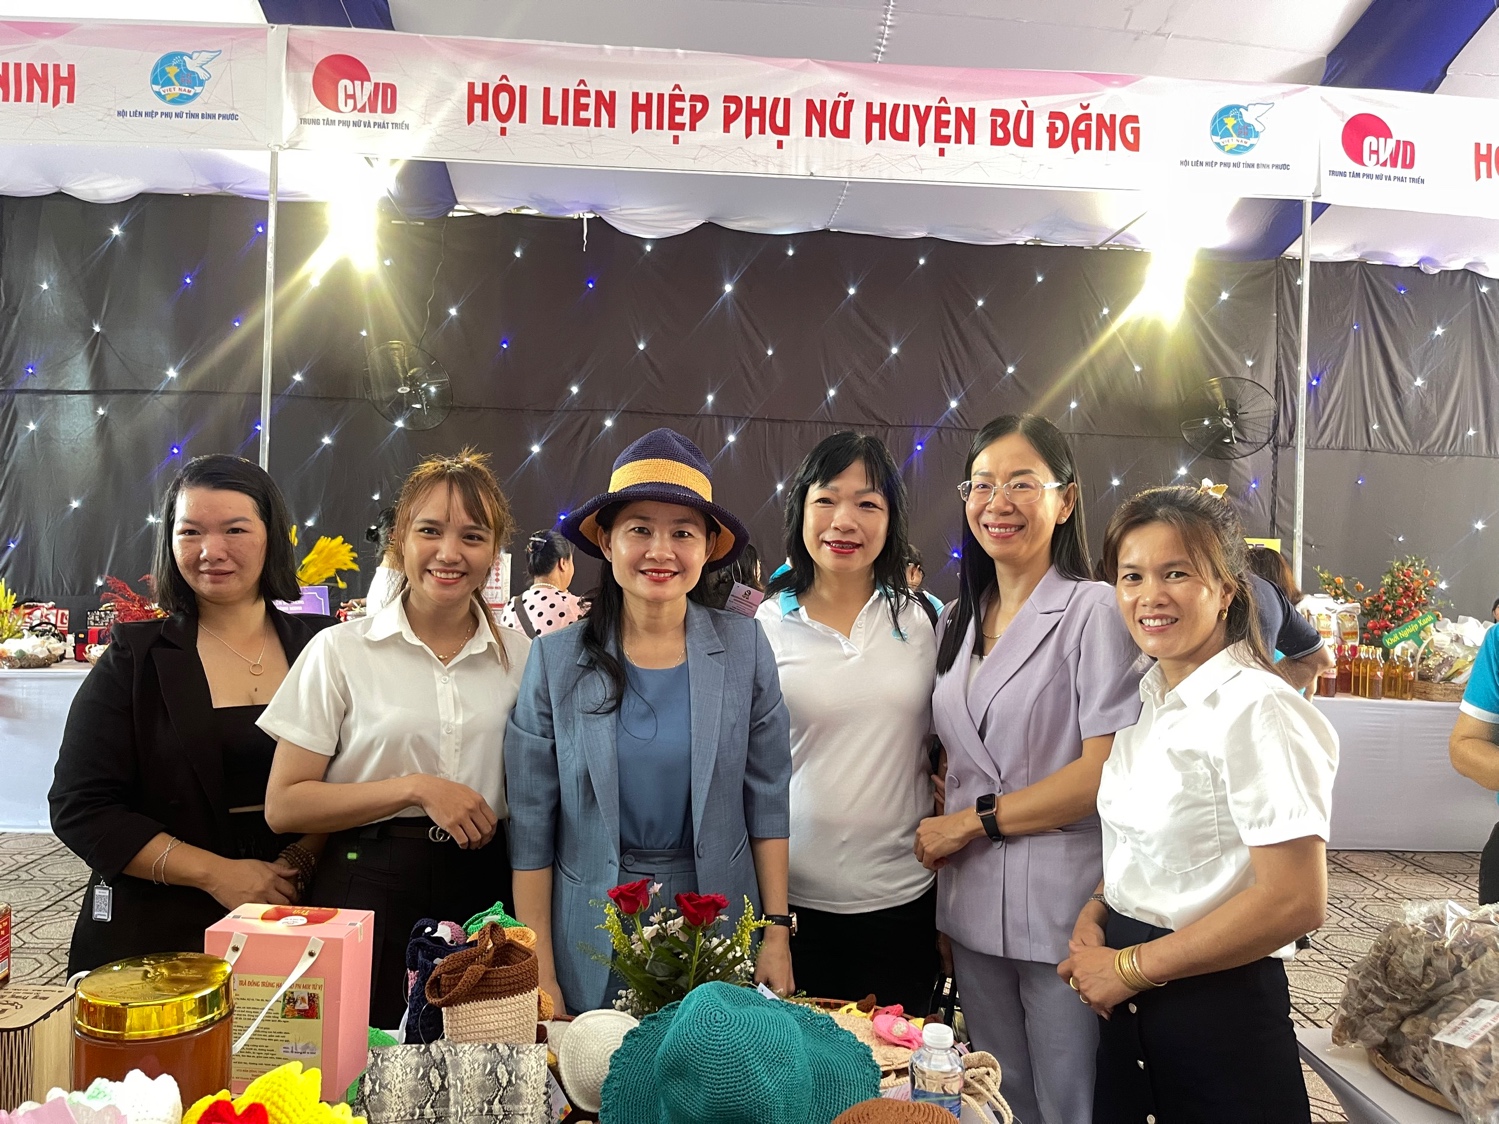 Kết nối, giới thiệu mô hình phụ nữ phát triển kinh tế hòa nhập cộng đồng cho nạn nhân mua bán người tại Bình Phước - Ảnh 2.